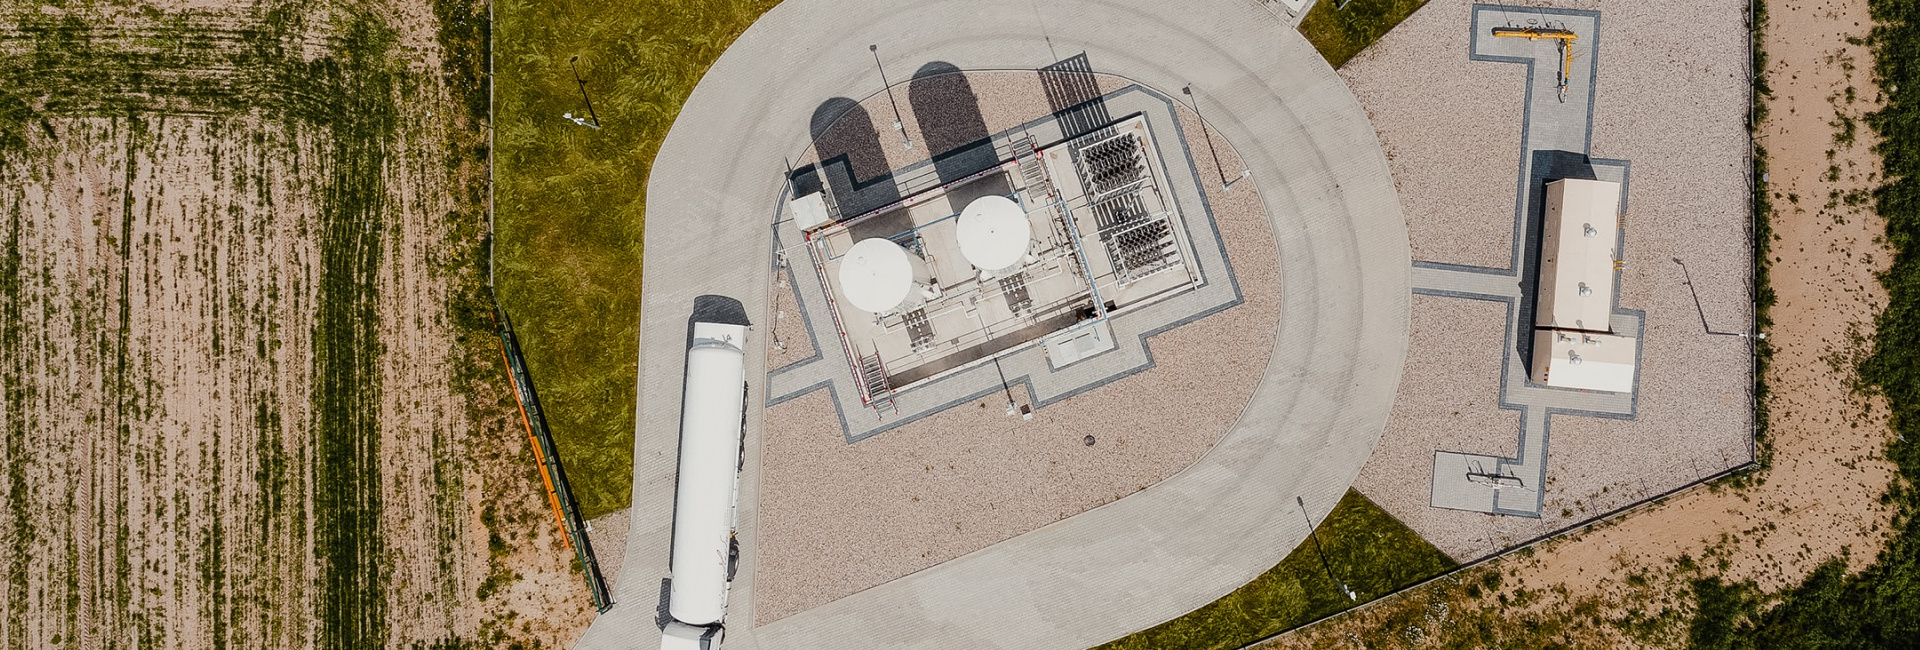 Stacja regazyfikacji LNG widziana z góry (z drona), zbiorniki LNG, parownice, ciężarówka cysterna